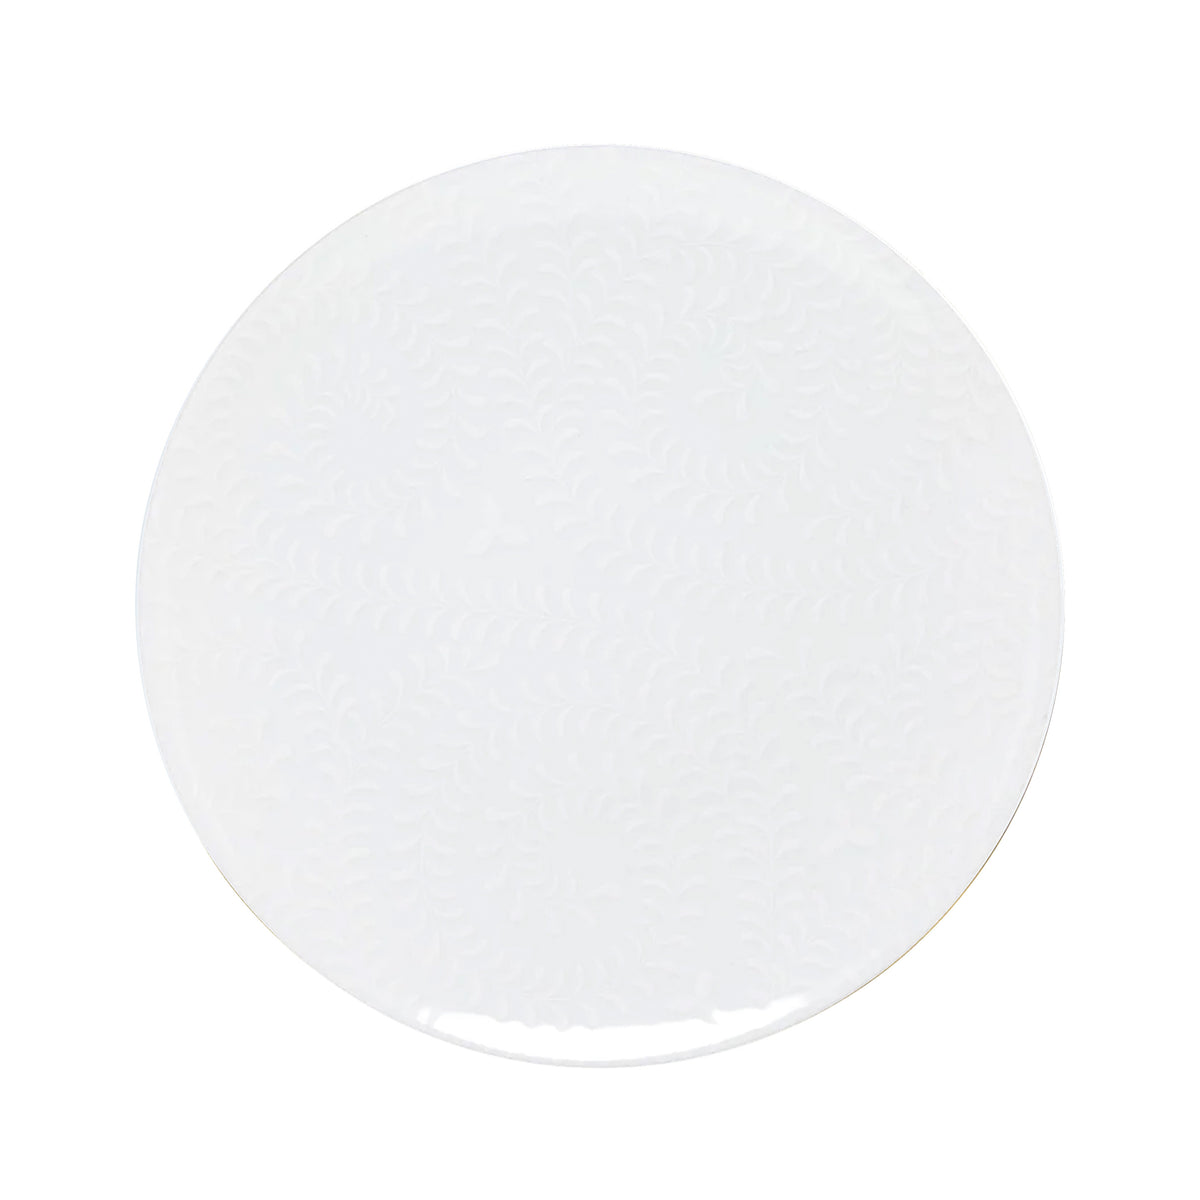 ARJUNA white on white - Dinner plate